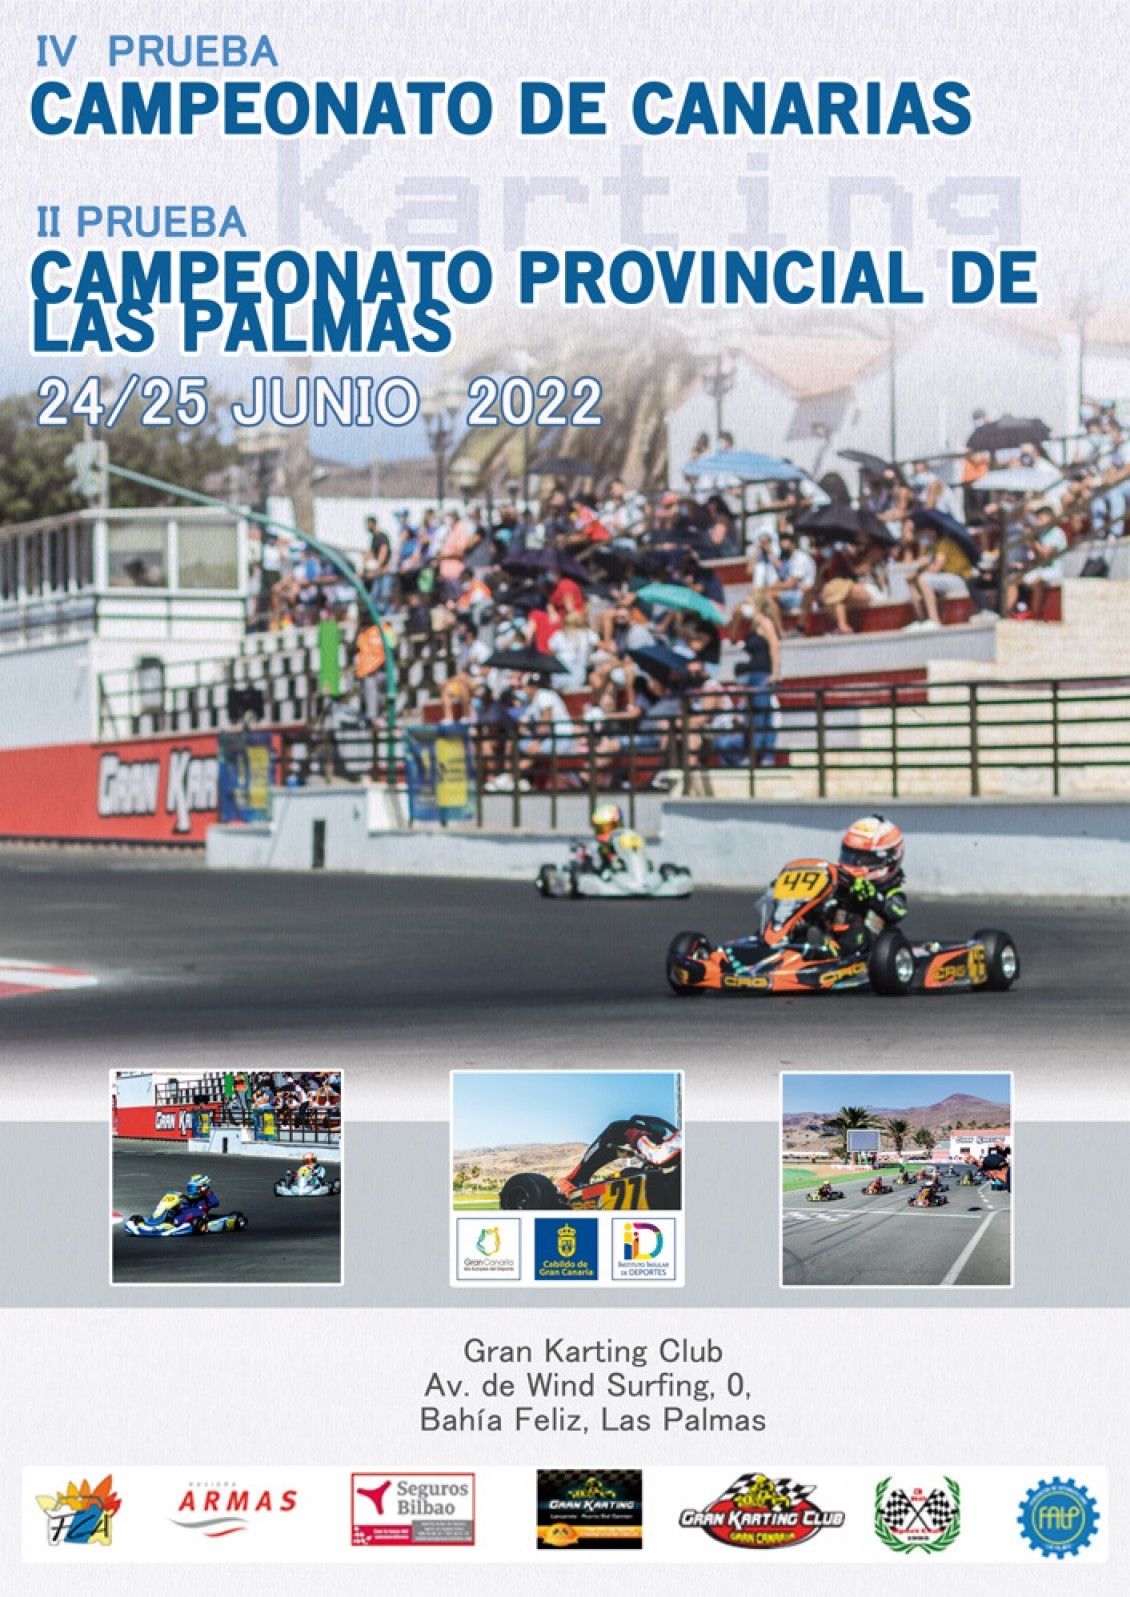 Vuelve el Karting a Gran Canaria